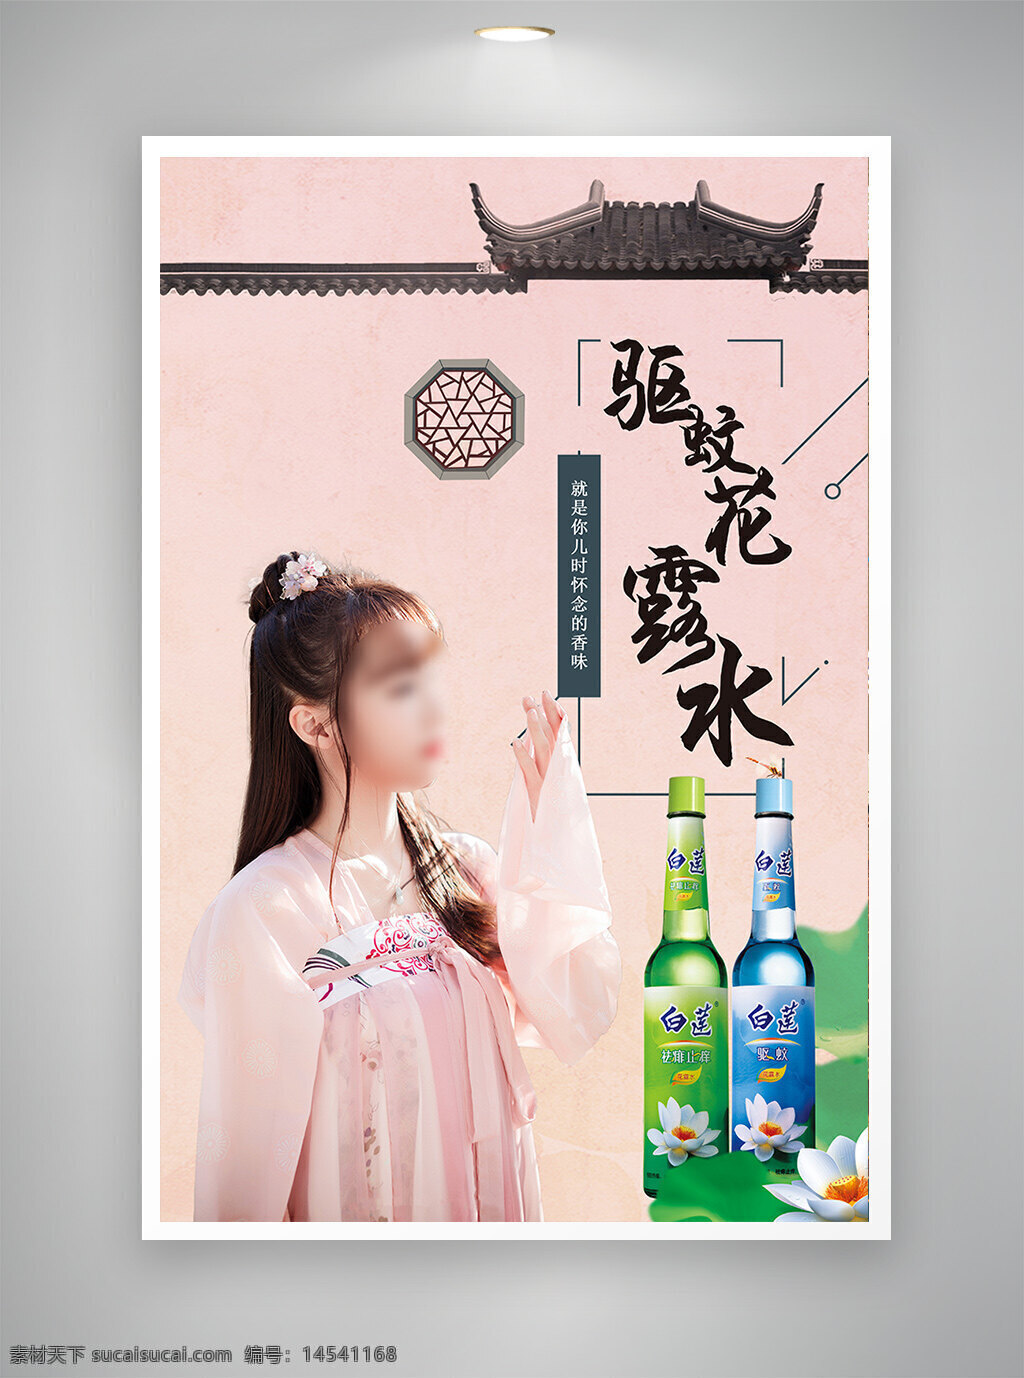 中国风海报 促销海报 古风海报 驱蚊花露水